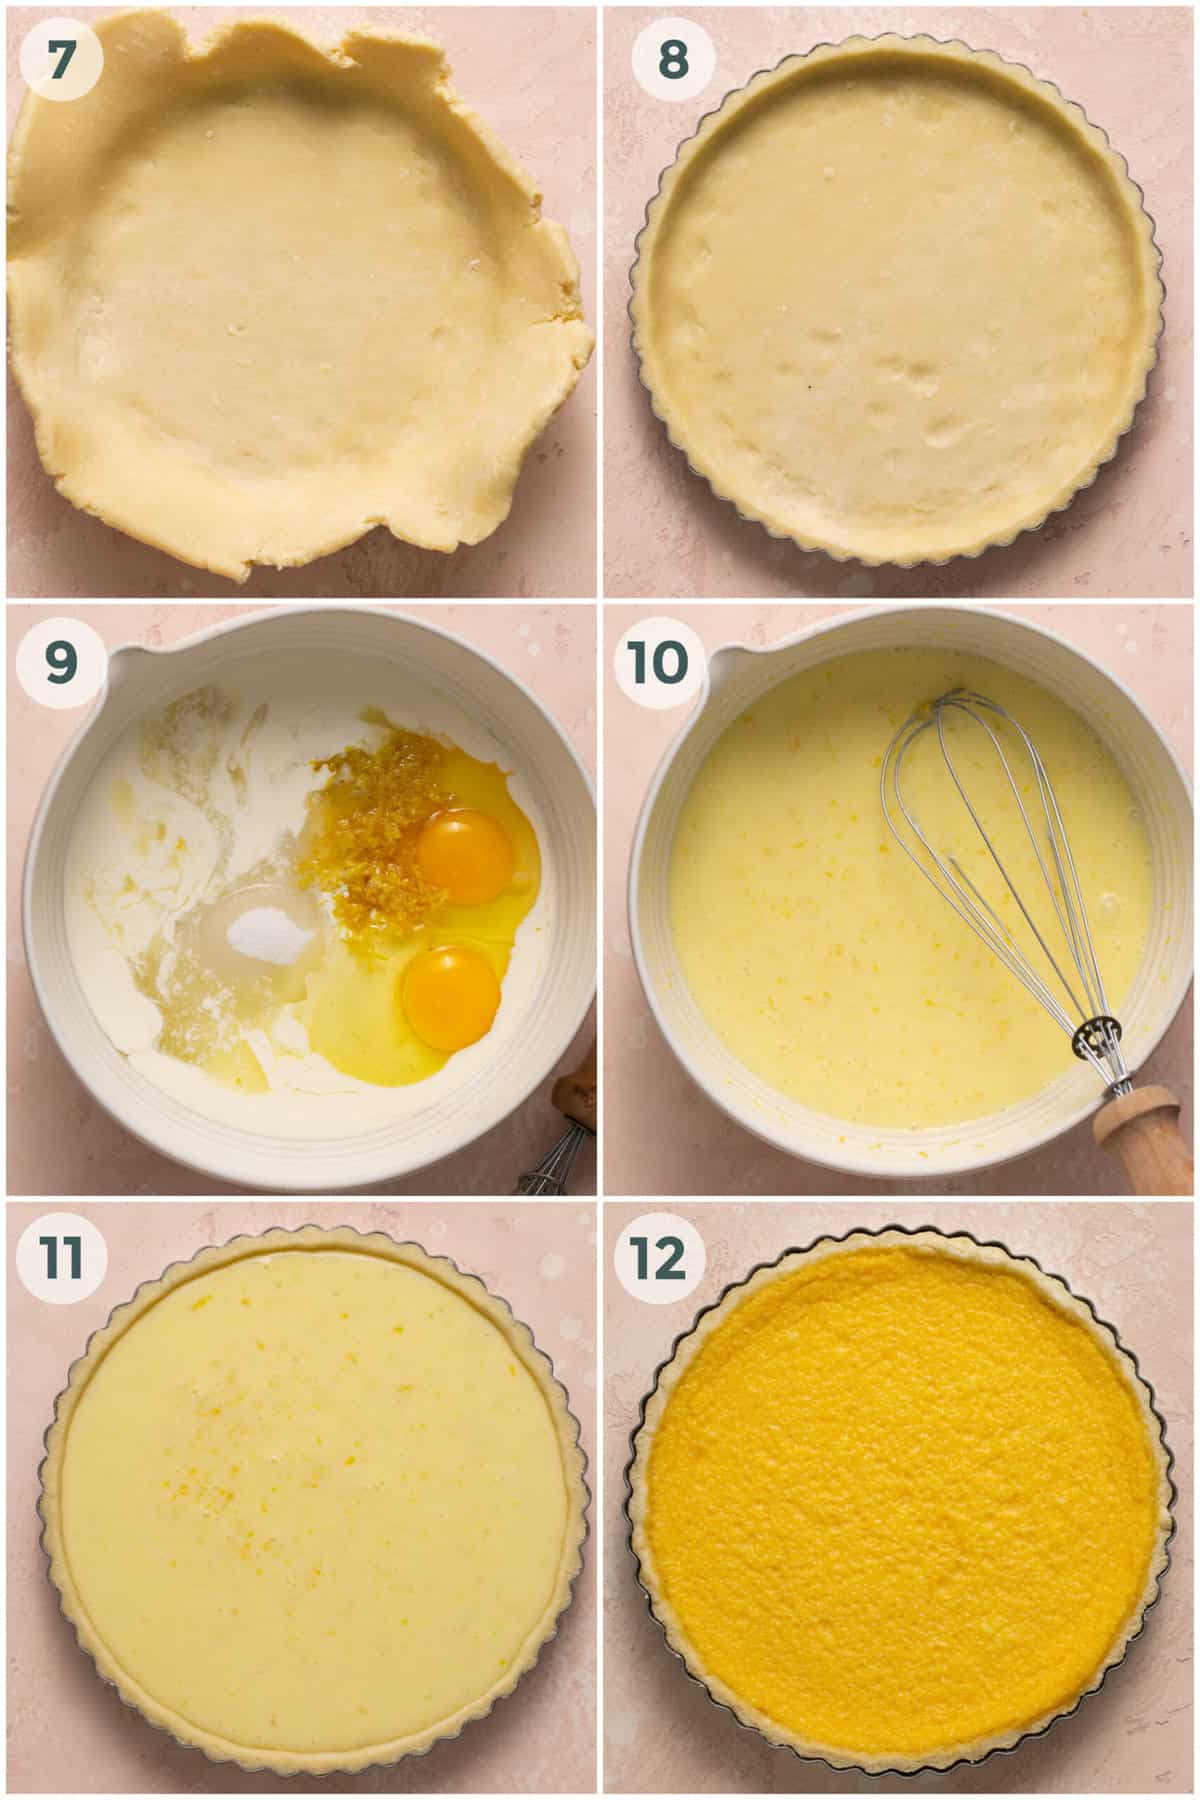 steps 7-12 of preparing lemon tart recipe